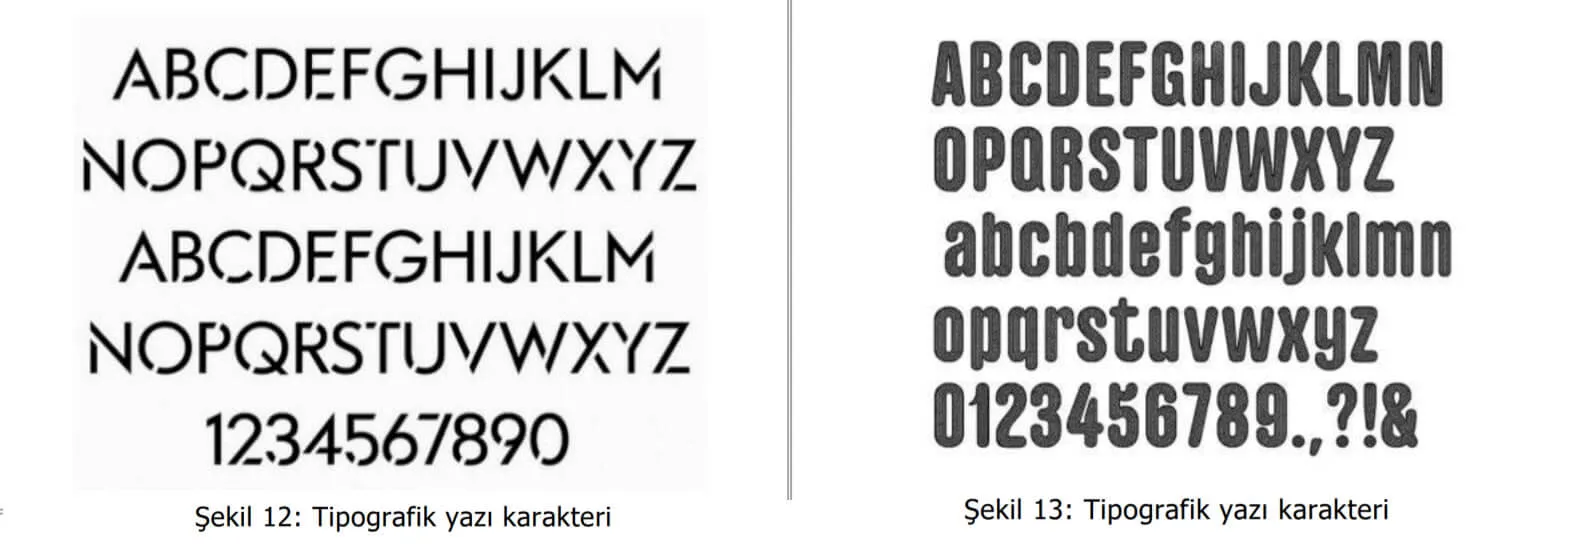 tipografik yazı karakter örnekleri-marka tescil sorgulama